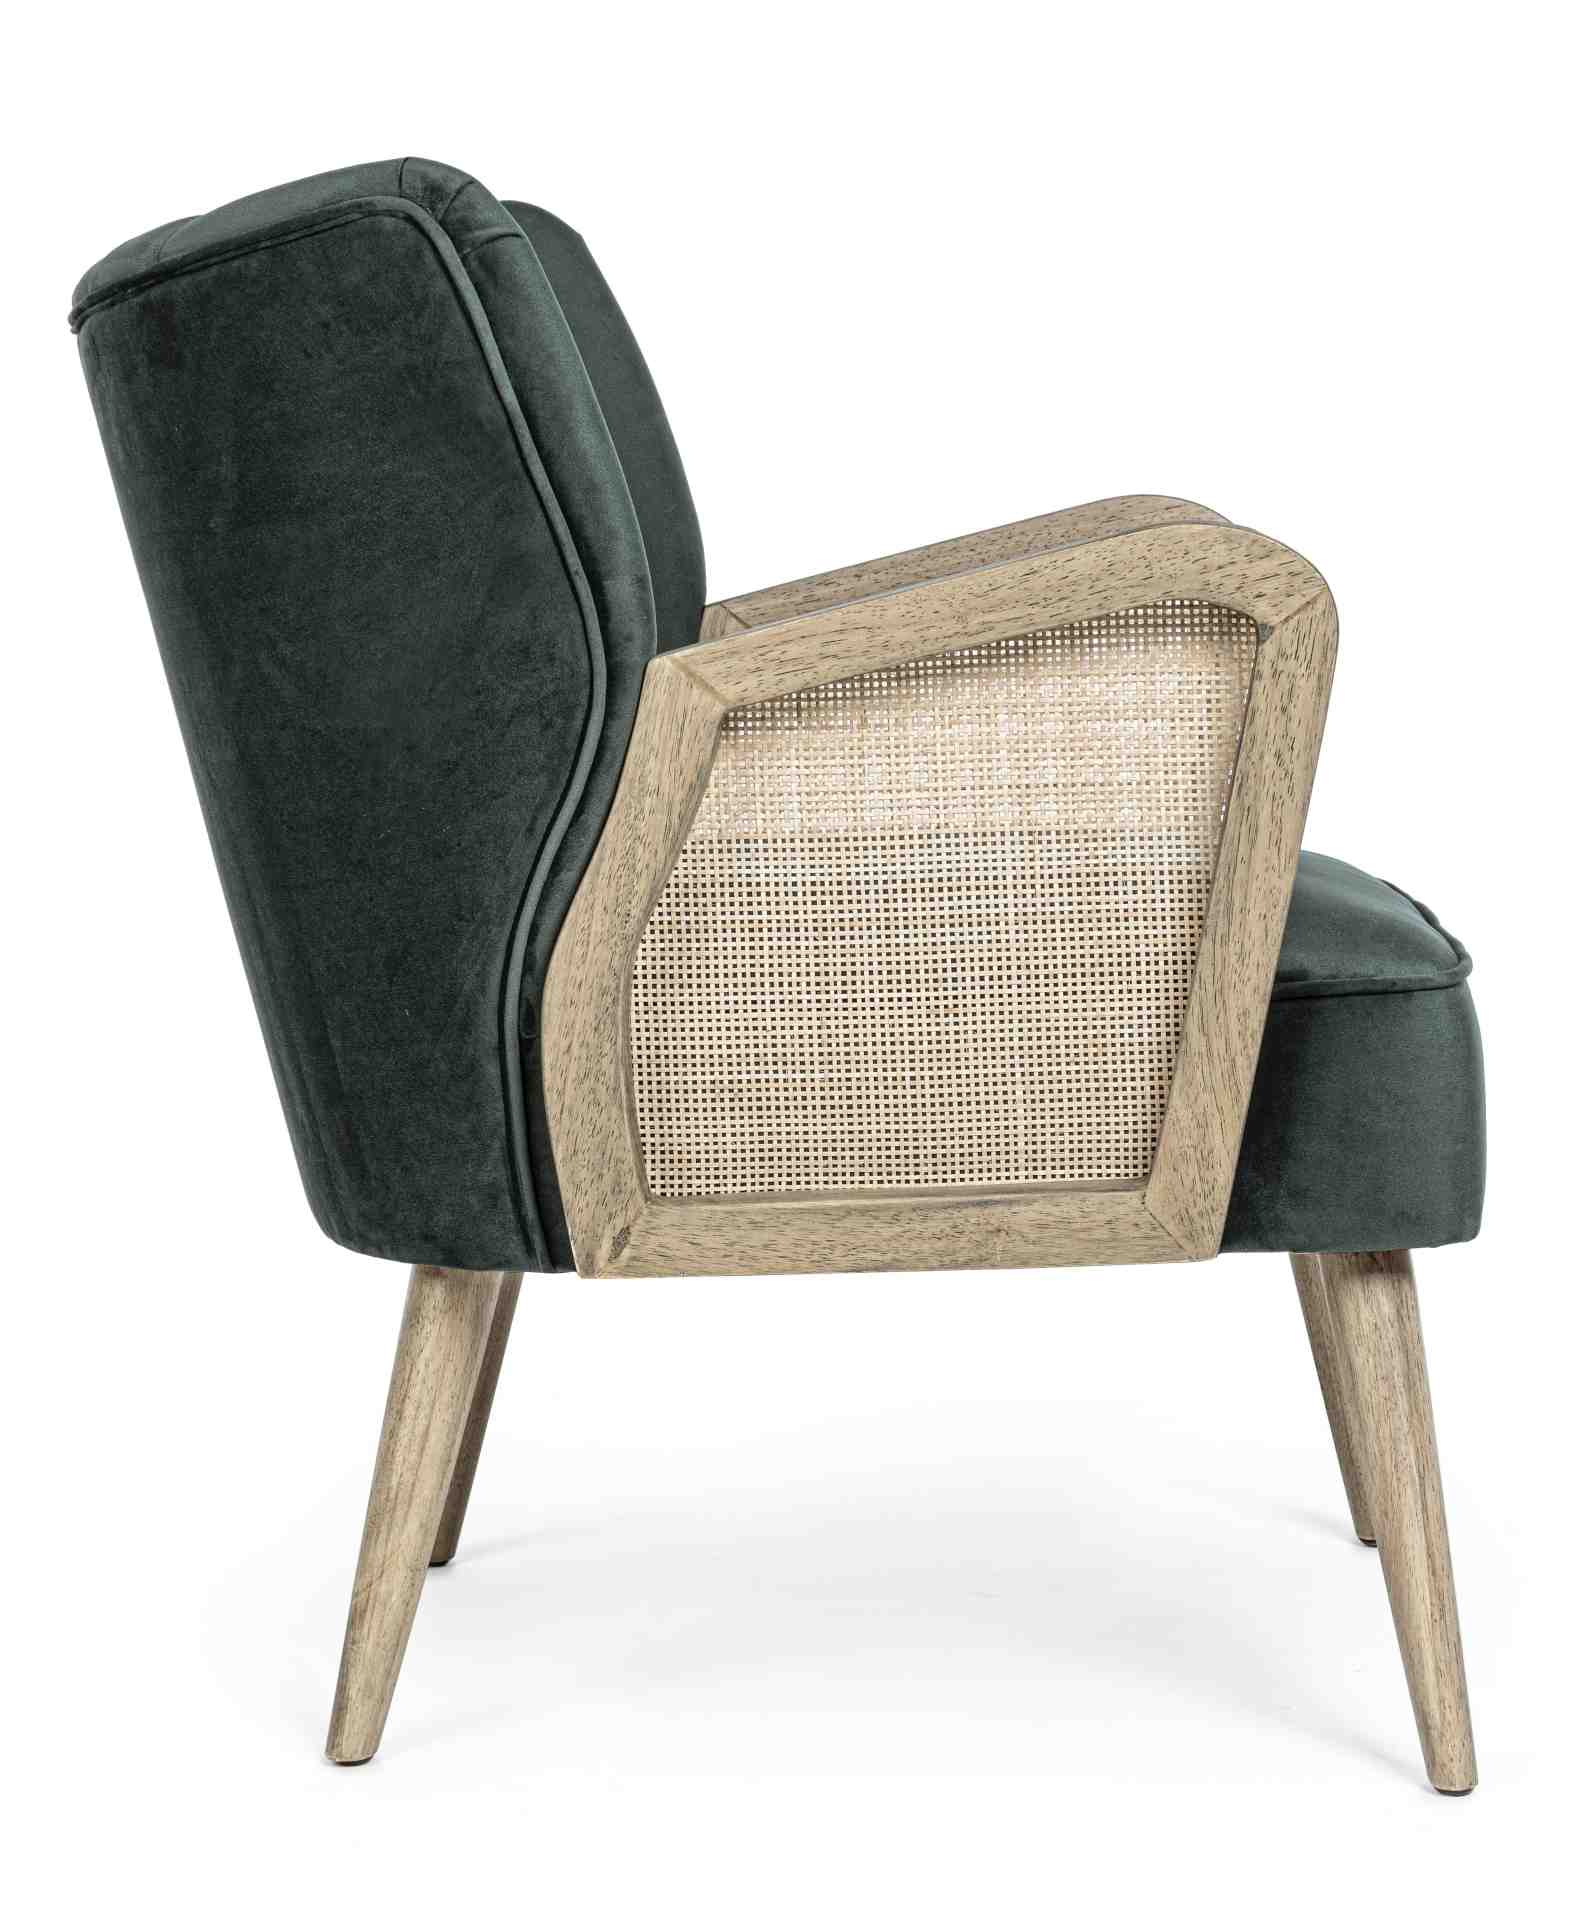 Der Sessel Virna überzeugt mit seinem modernen Design. Gefertigt wurde er aus Stoff in Samt-Optik, welcher einen grünen Farbton besitzt. Das Gestell ist aus Kautschukholz und hat eine natürliche Farbe. Der Sessel besitzt eine Sitzhöhe von 44 cm. Die Breit